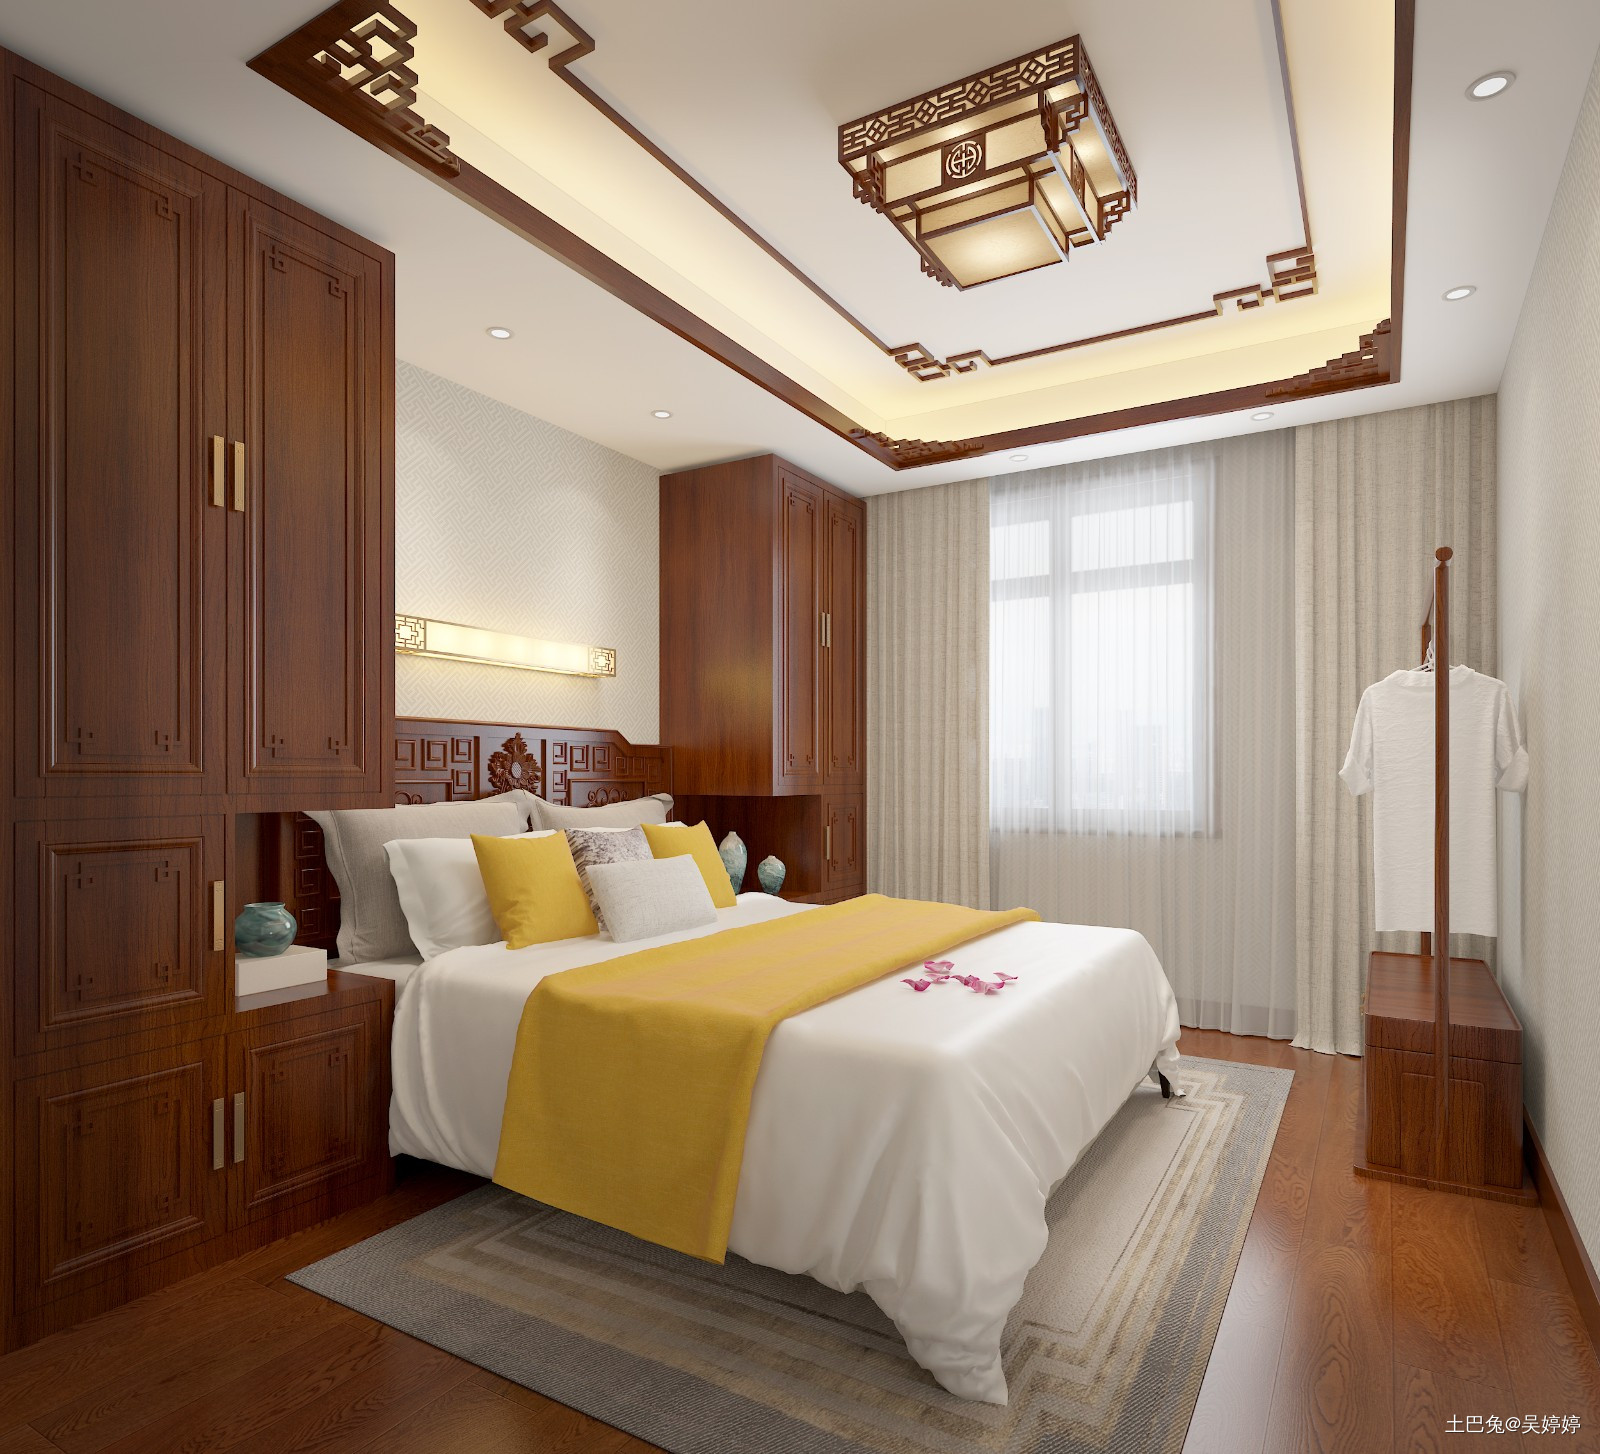 常坐客北京设计其他卧室设计图片赏析